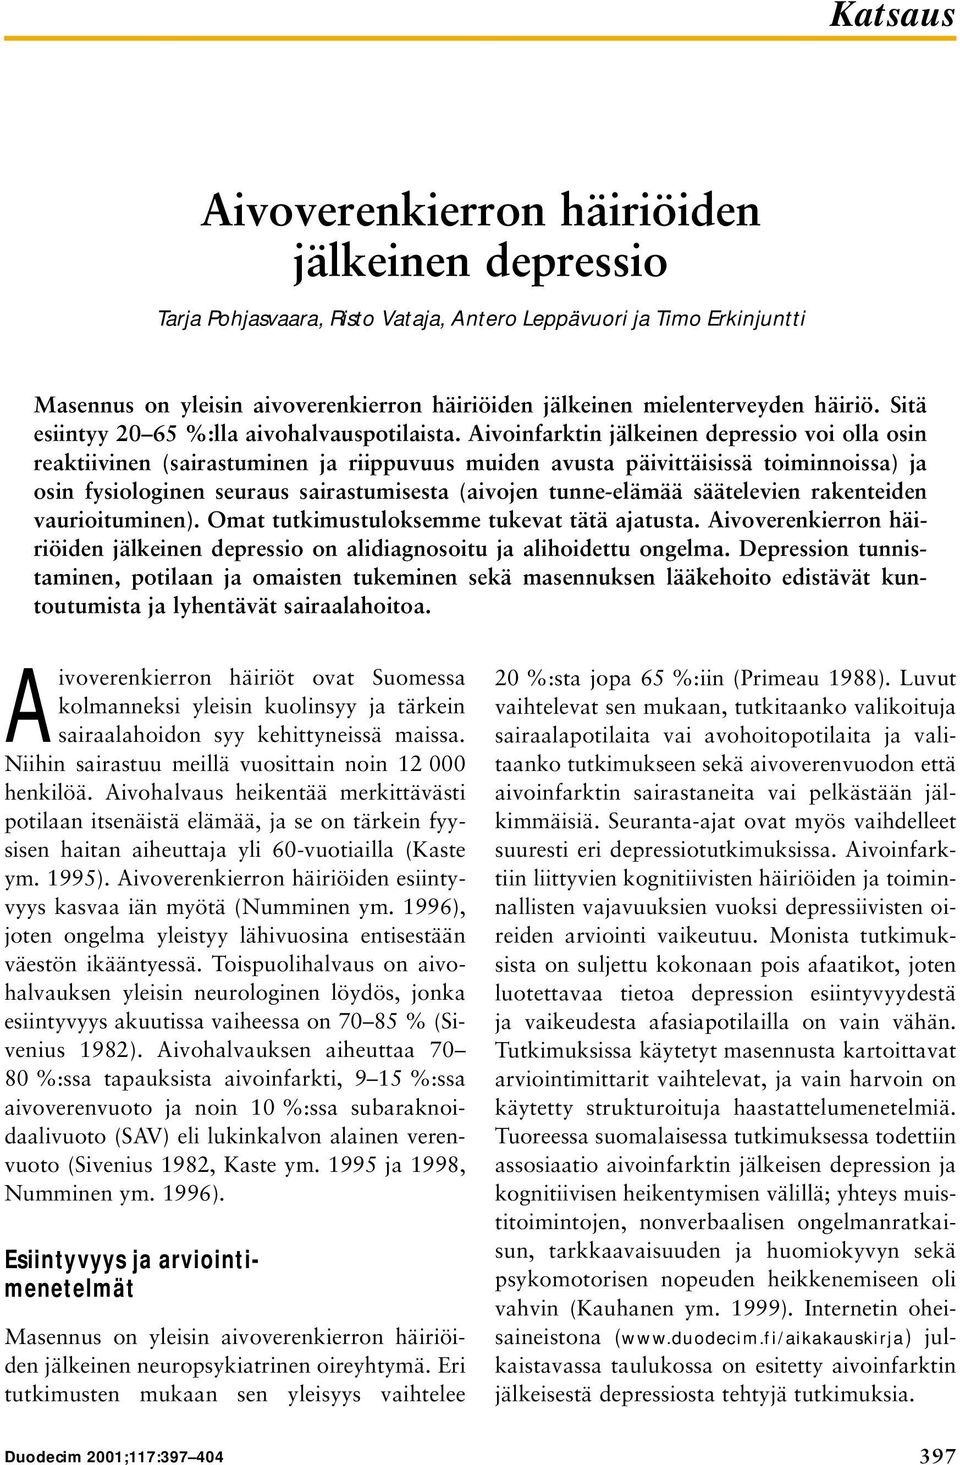 Aivoinfarktin jälkeinen depressio voi olla osin reaktiivinen (sairastuminen ja riippuvuus muiden avusta päivittäisissä toiminnoissa) ja osin fysiologinen seuraus sairastumisesta (aivojen tunne-elämää